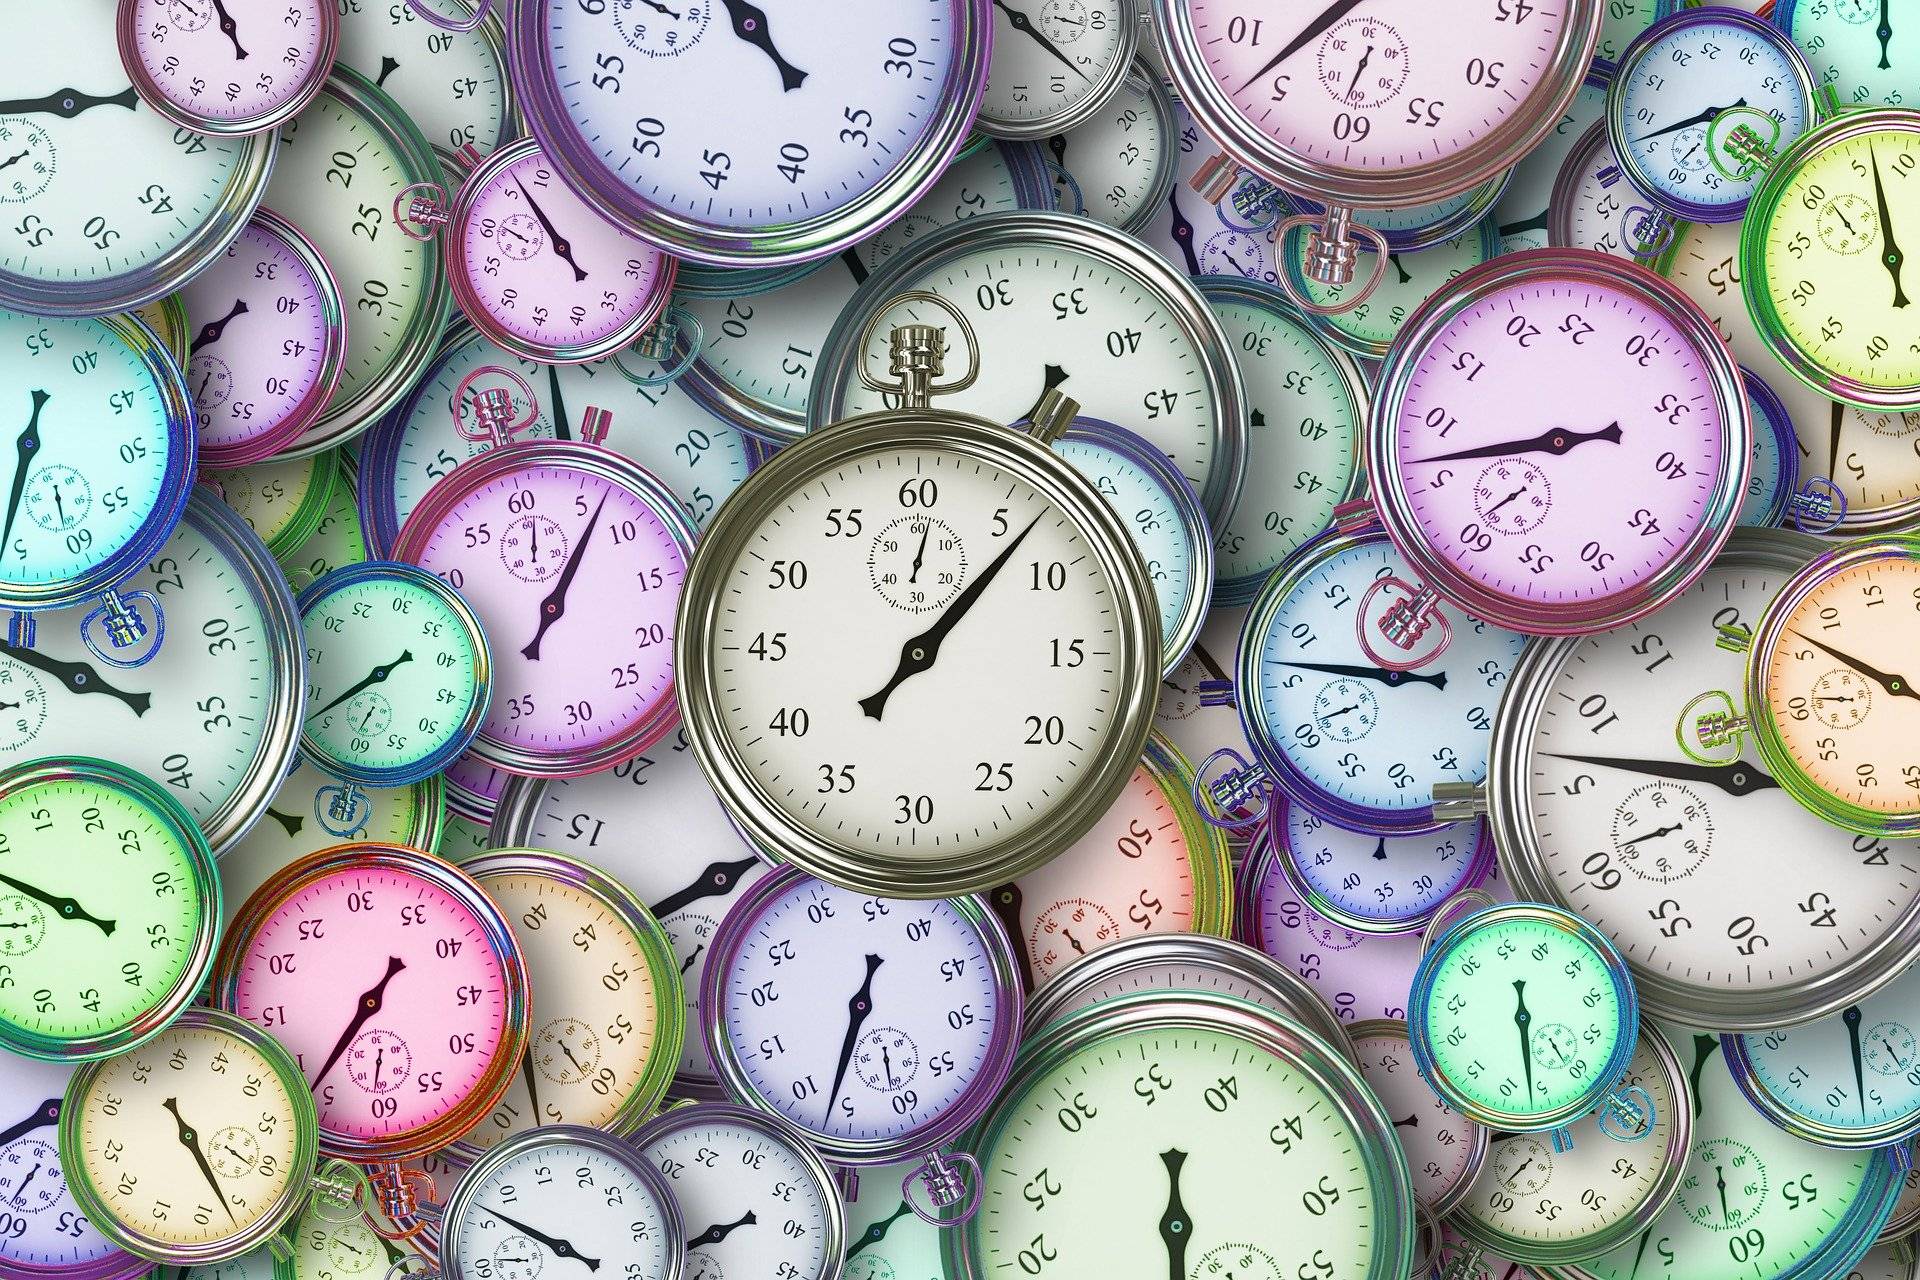 Image très colorée représentant un entassement de montres - Gérer son temps et ses priorités